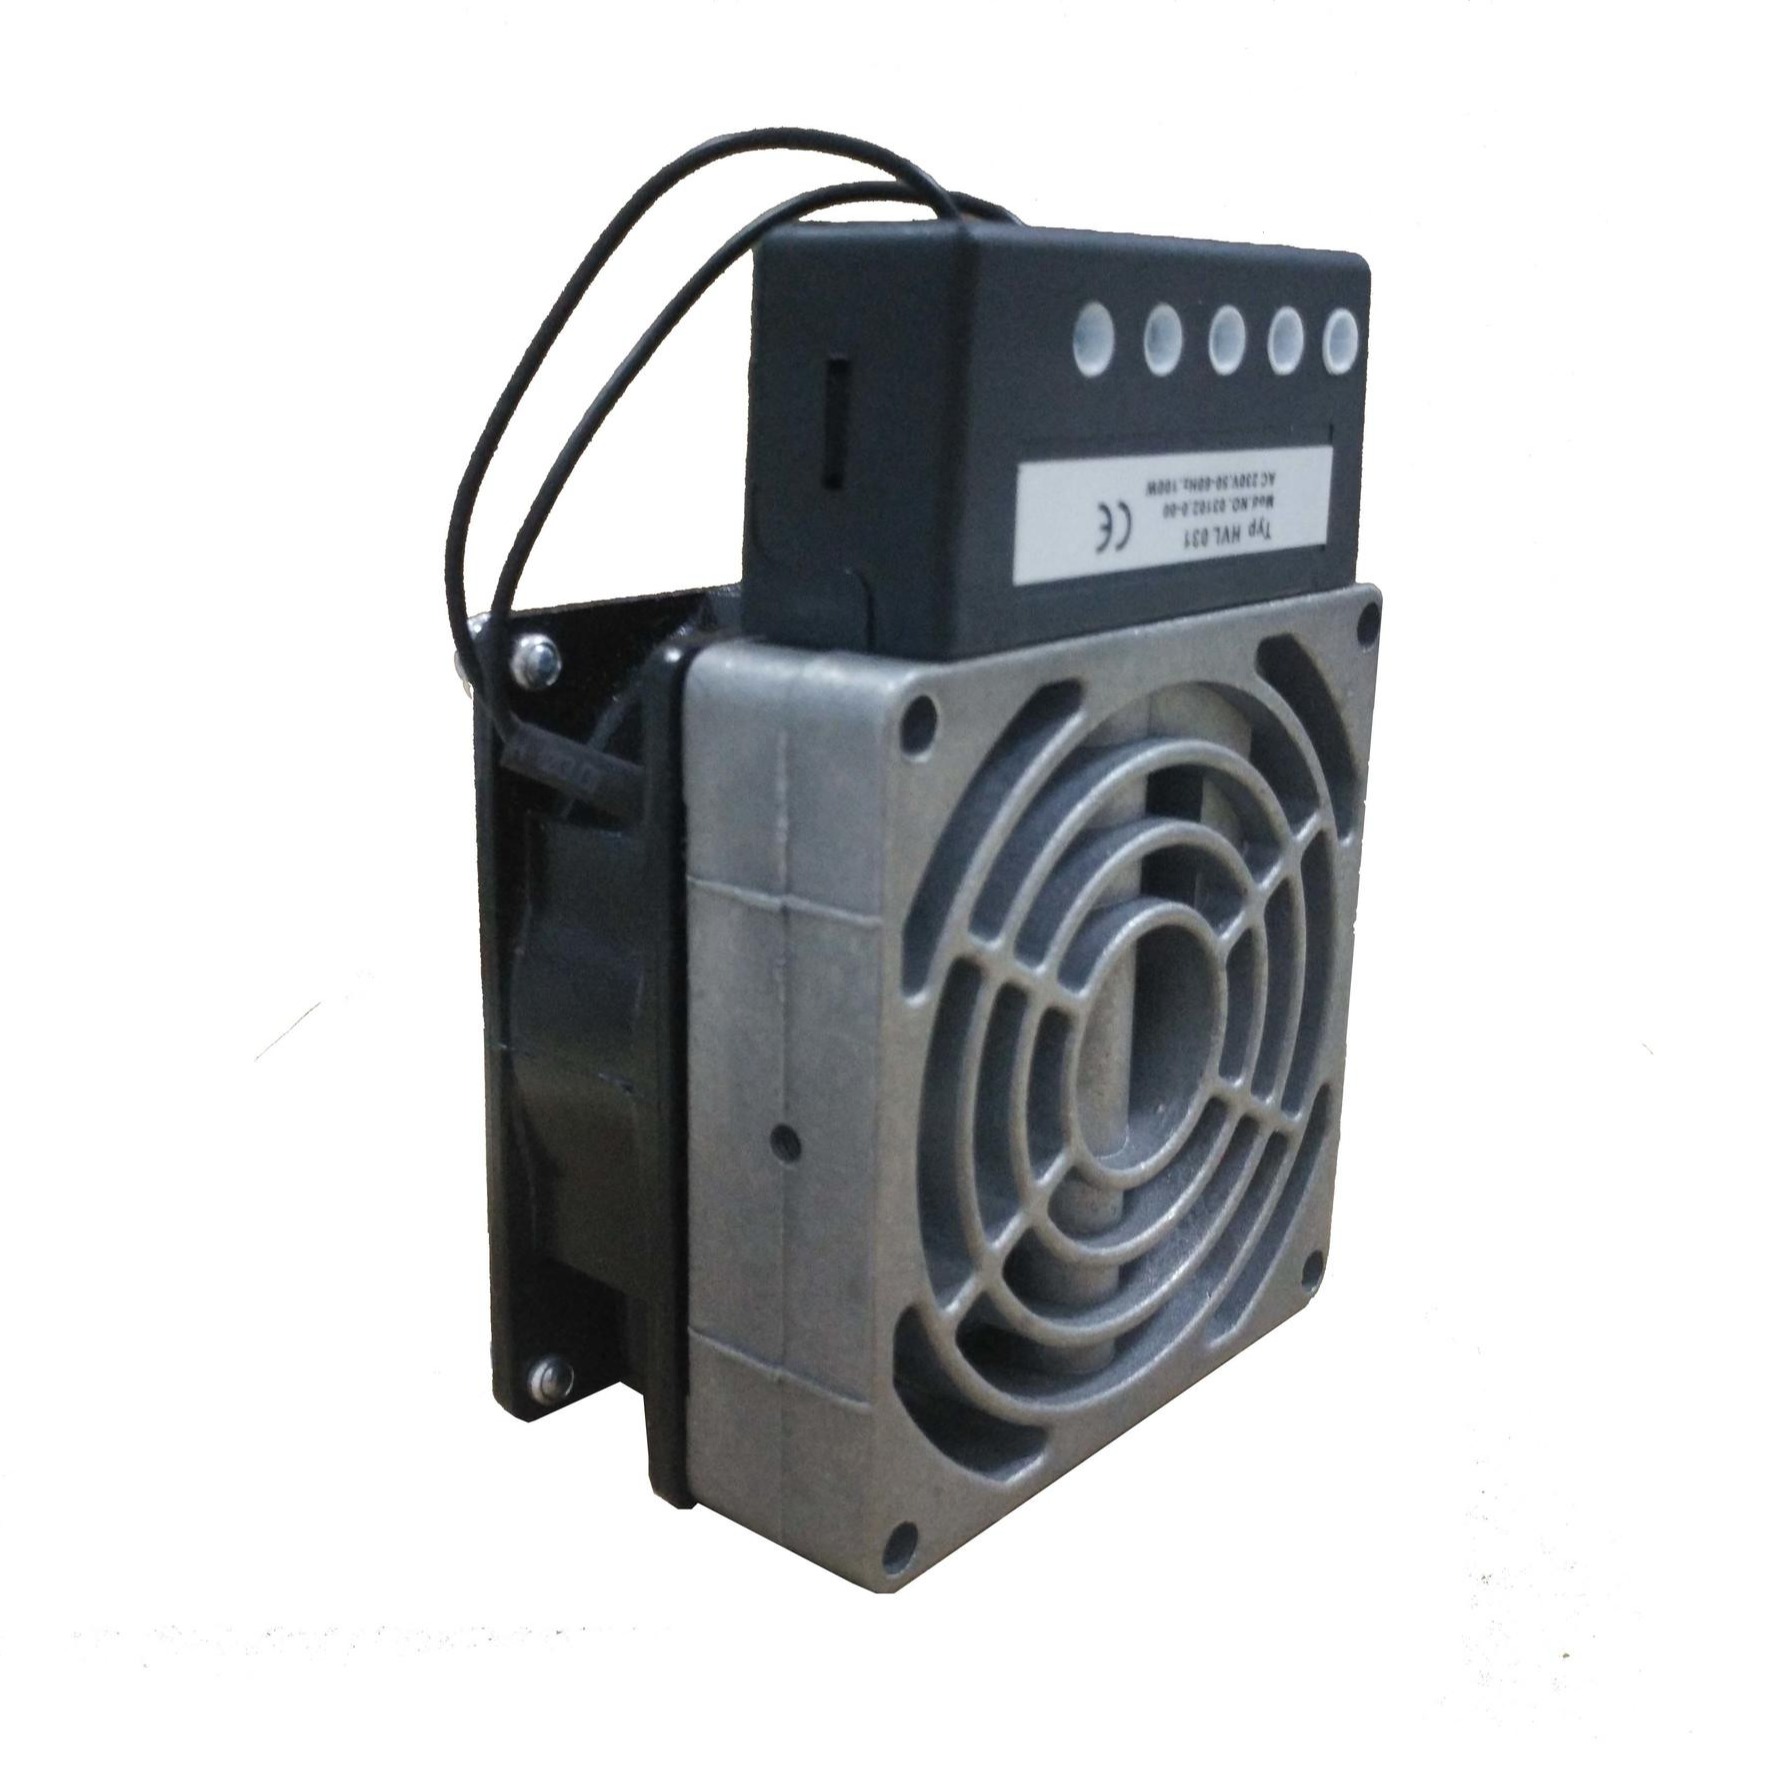 大功率加热器 变频器控制柜加热器 储能柜加热器 HVL031加热器 舍利弗CEREF